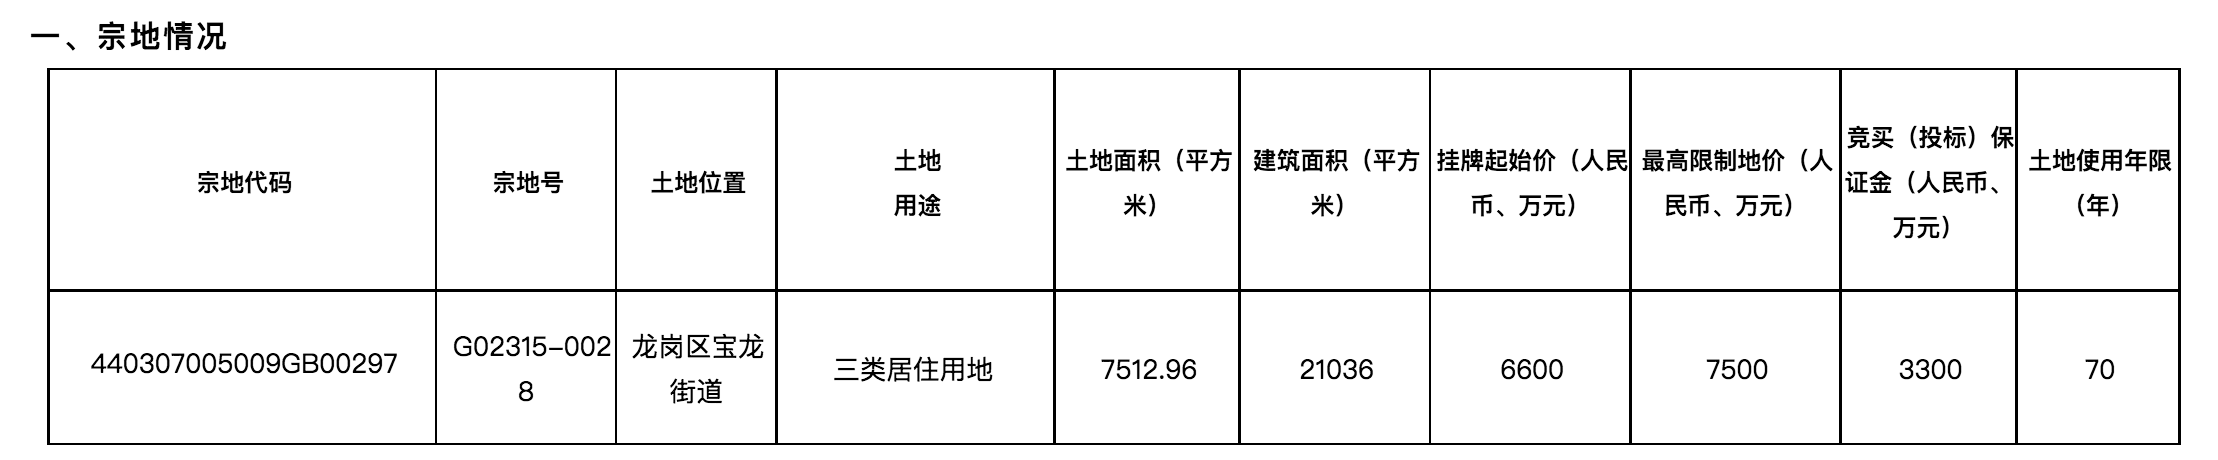 深圳78.42亿元挂牌4宗住宅用地，拟于8月18日出让